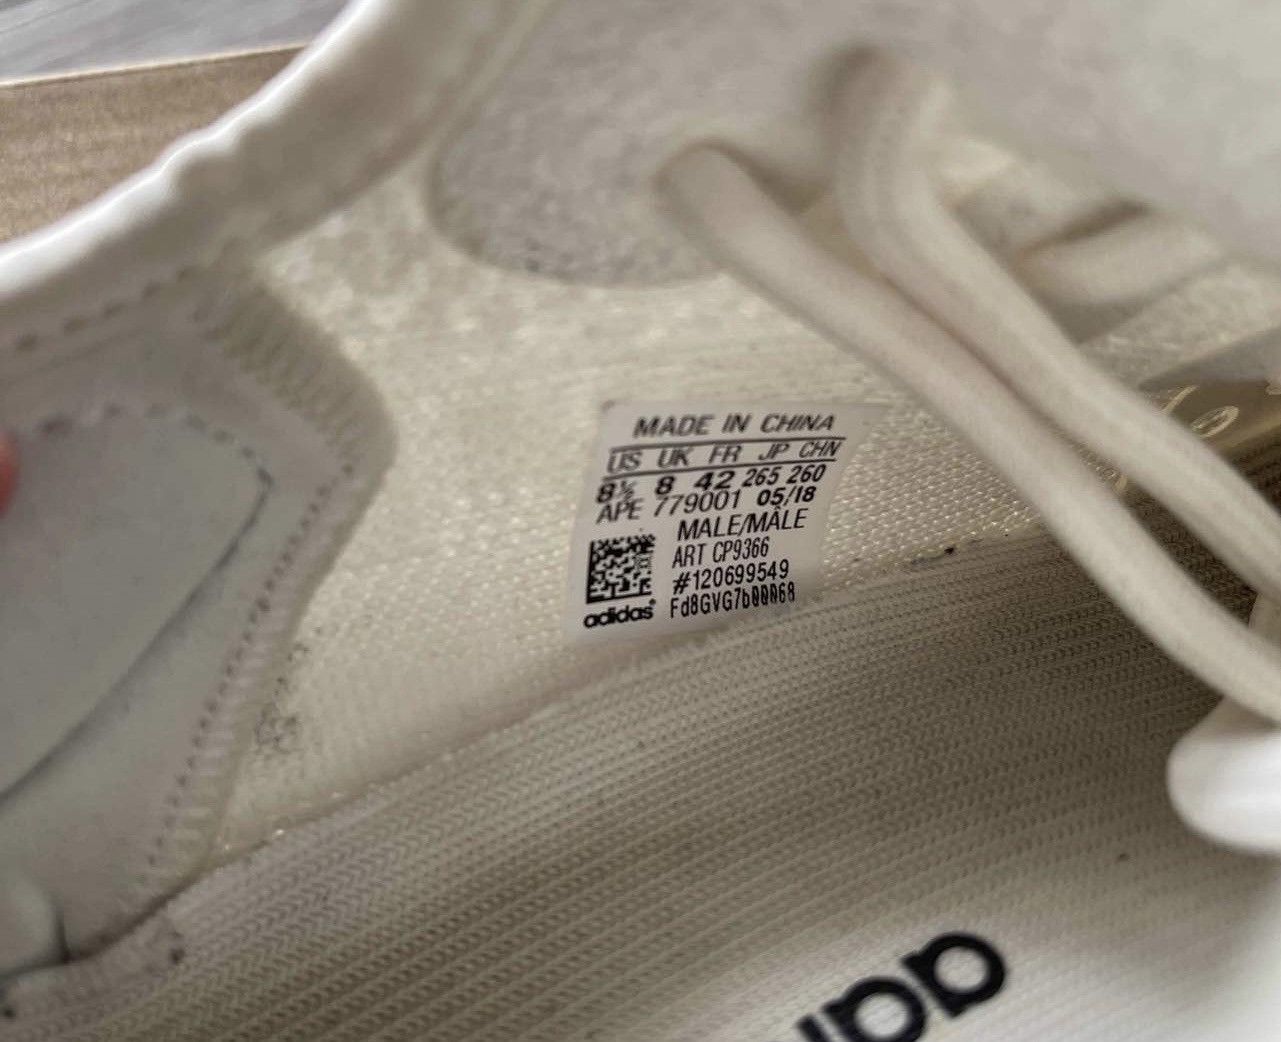 Adidas Adidas Yeezy Boost 350 V2 Cream 8.5 CP9366 | Grailed